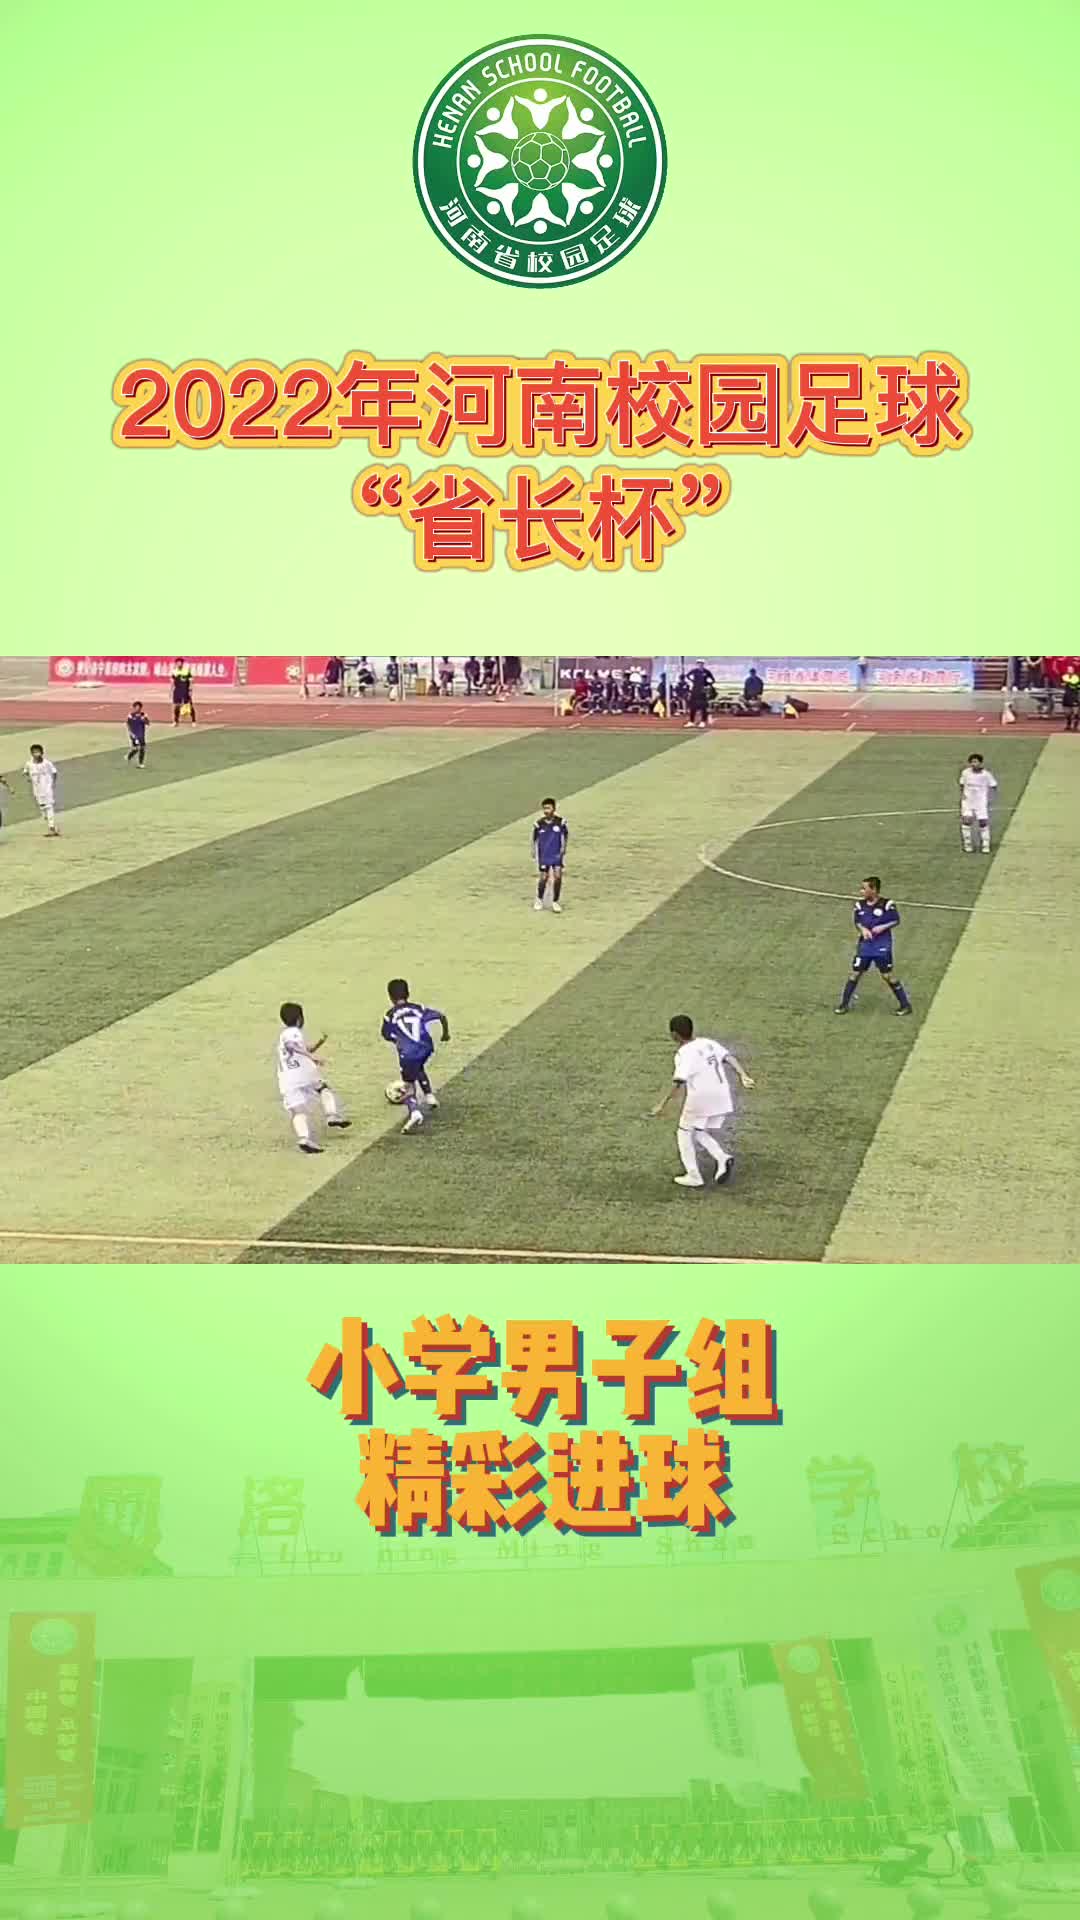 河南校园足球省长杯 小学男子组精彩进球